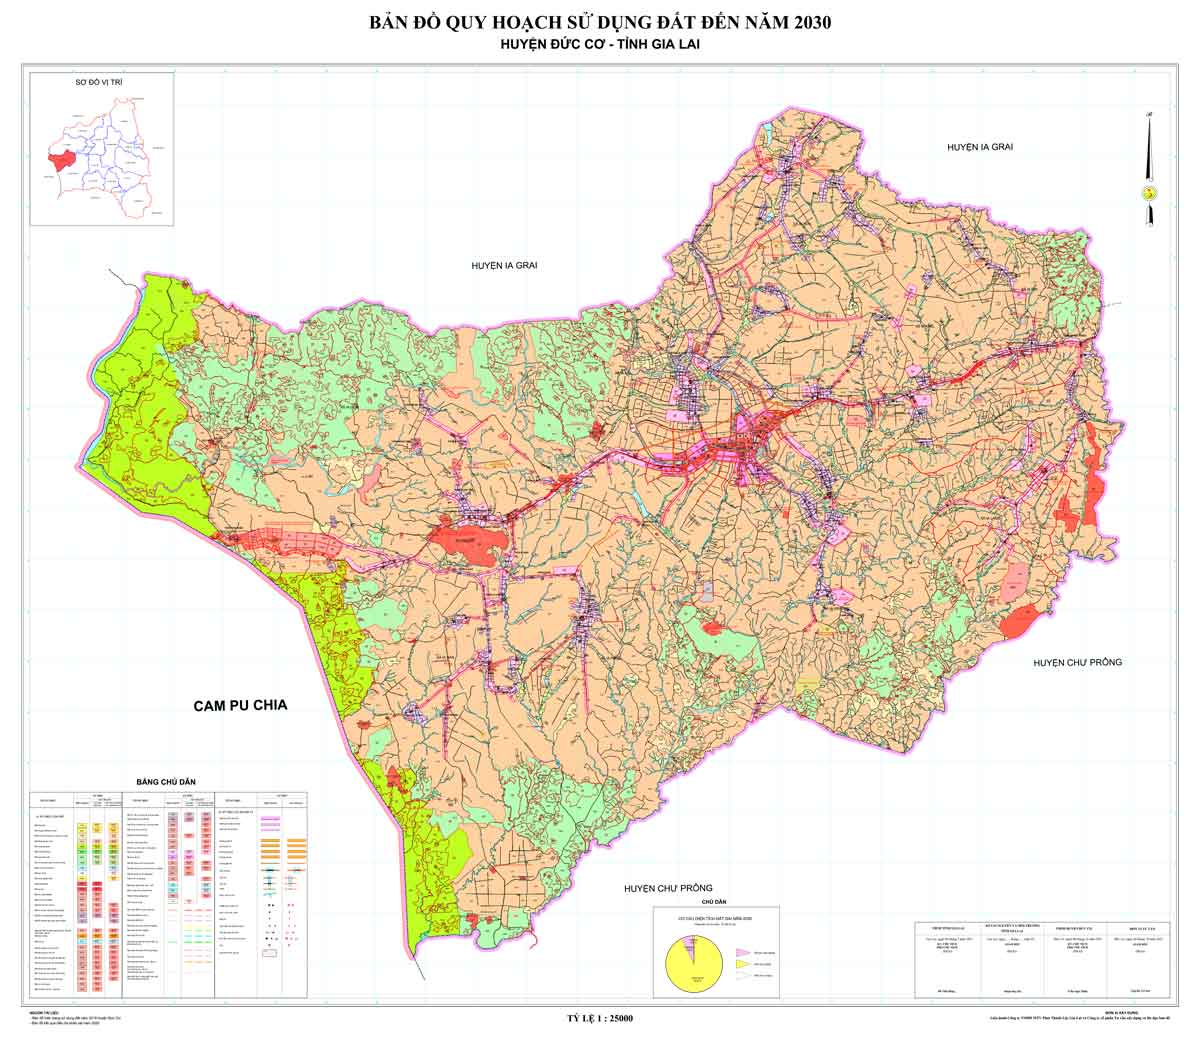 Bản đồ QHSDĐ huyện Đức Cơ đến năm 2030